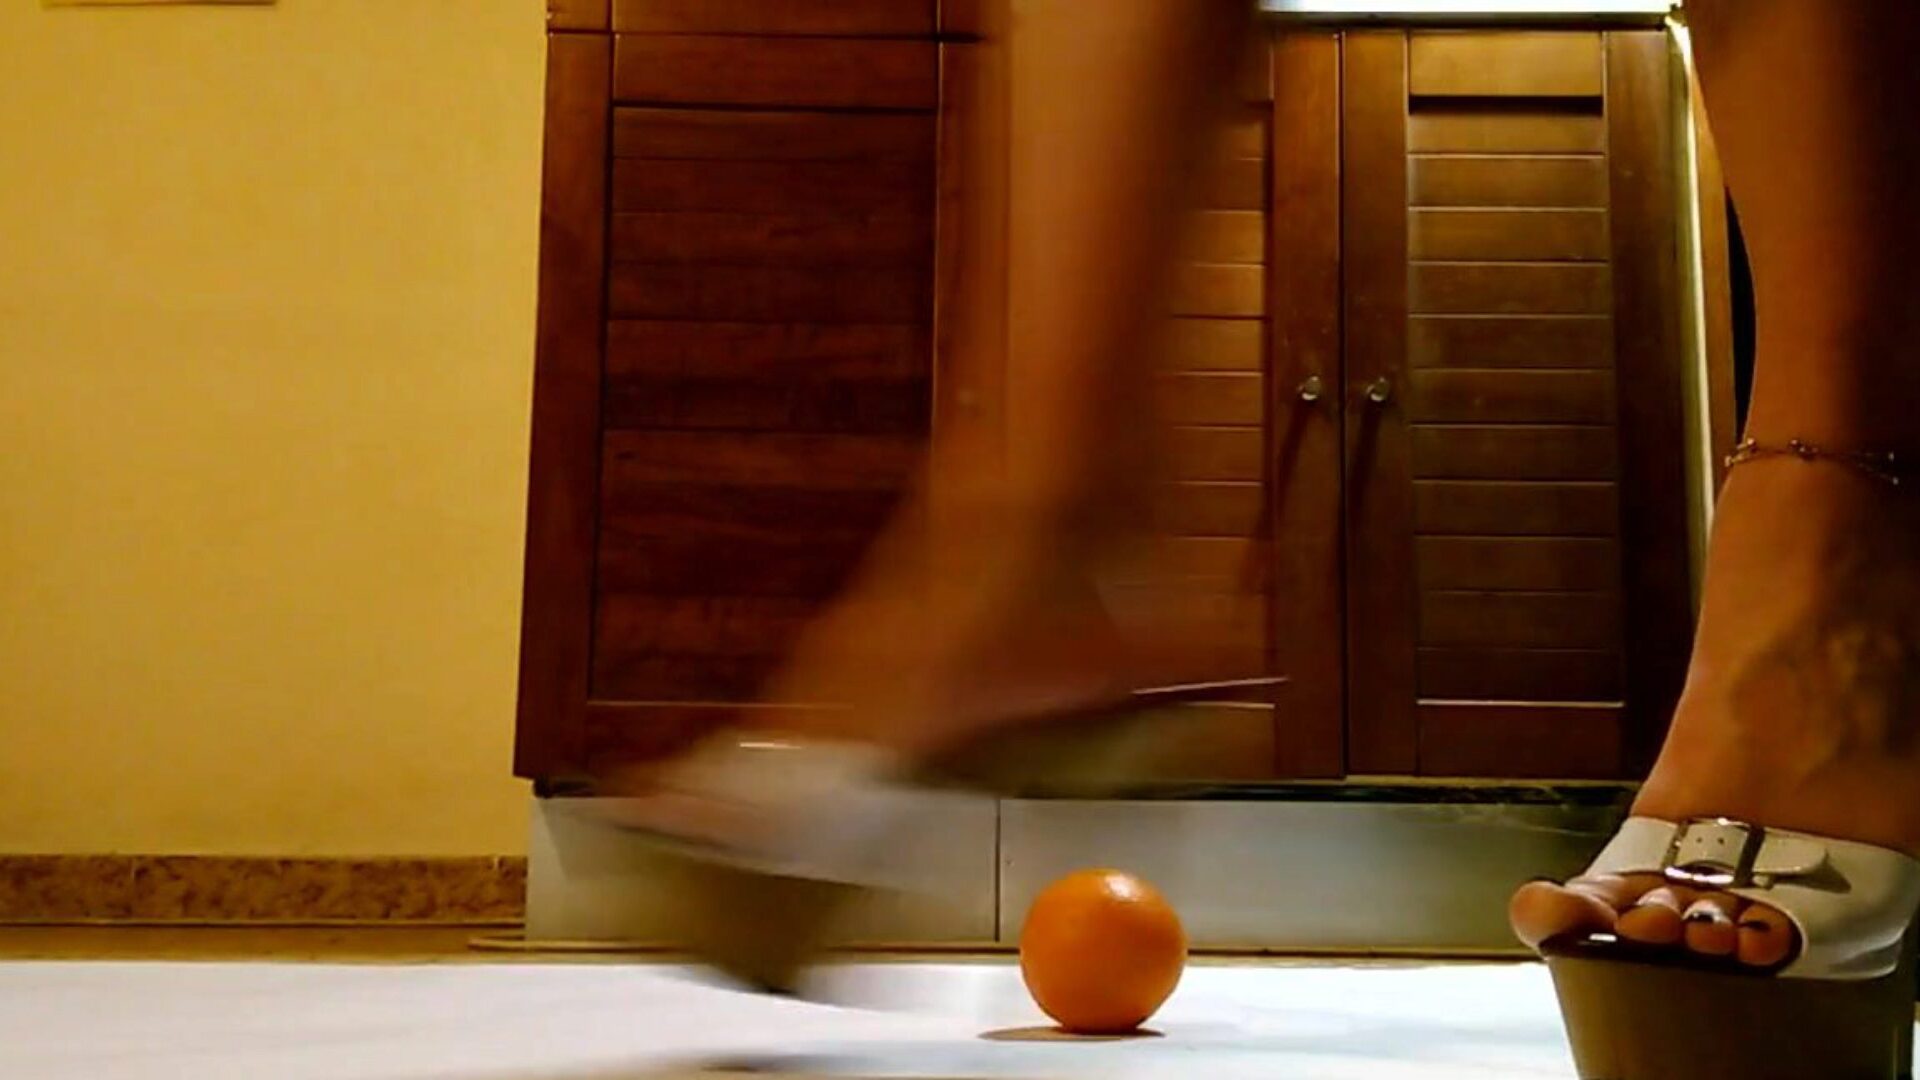 konobarica se igra i udara narančastom bojom u cipele s visokom potpeticom na platformi hawt